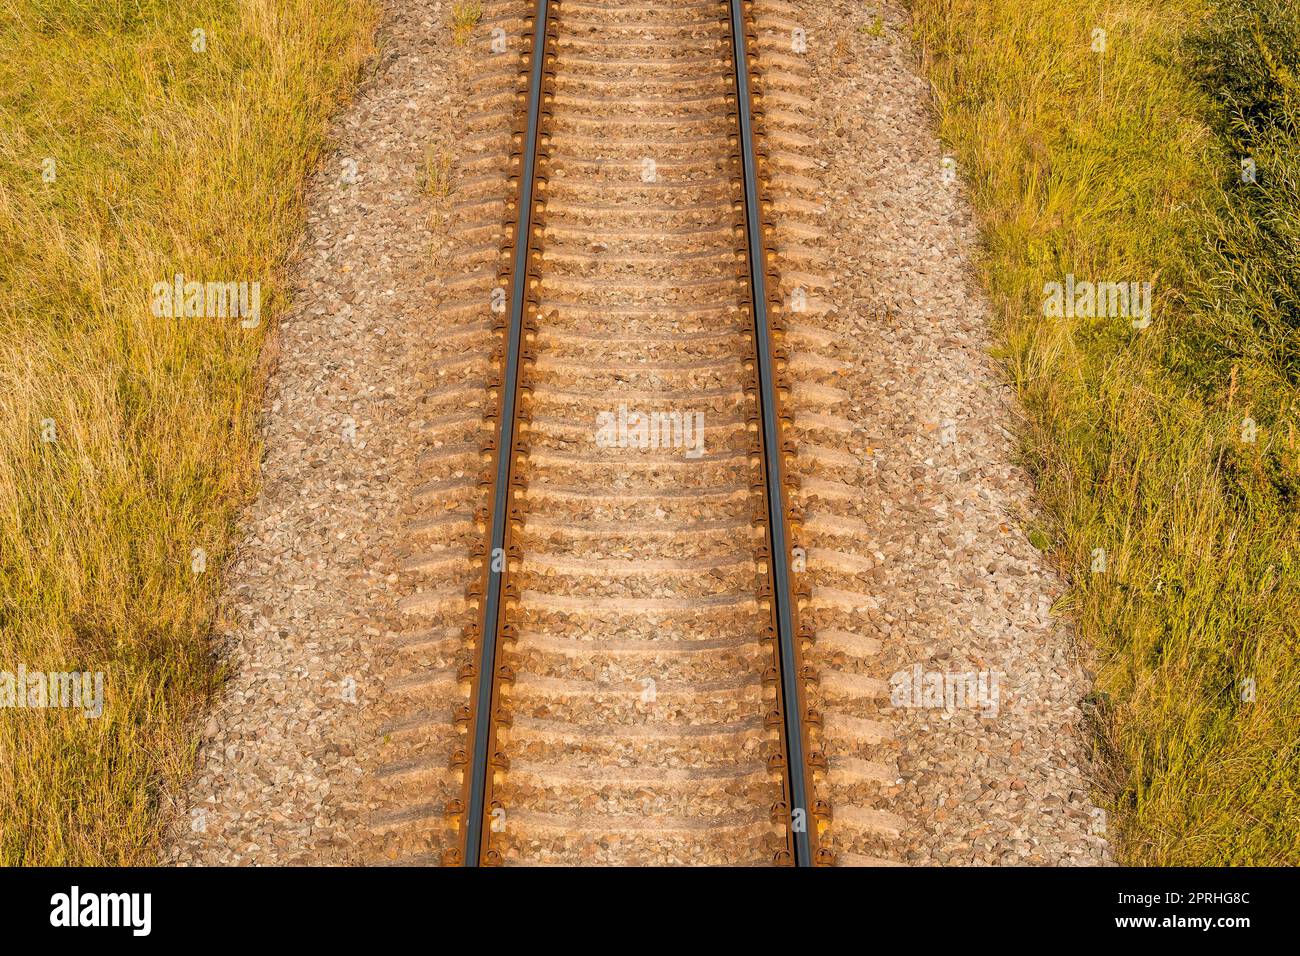 Railway top view Stock Photo